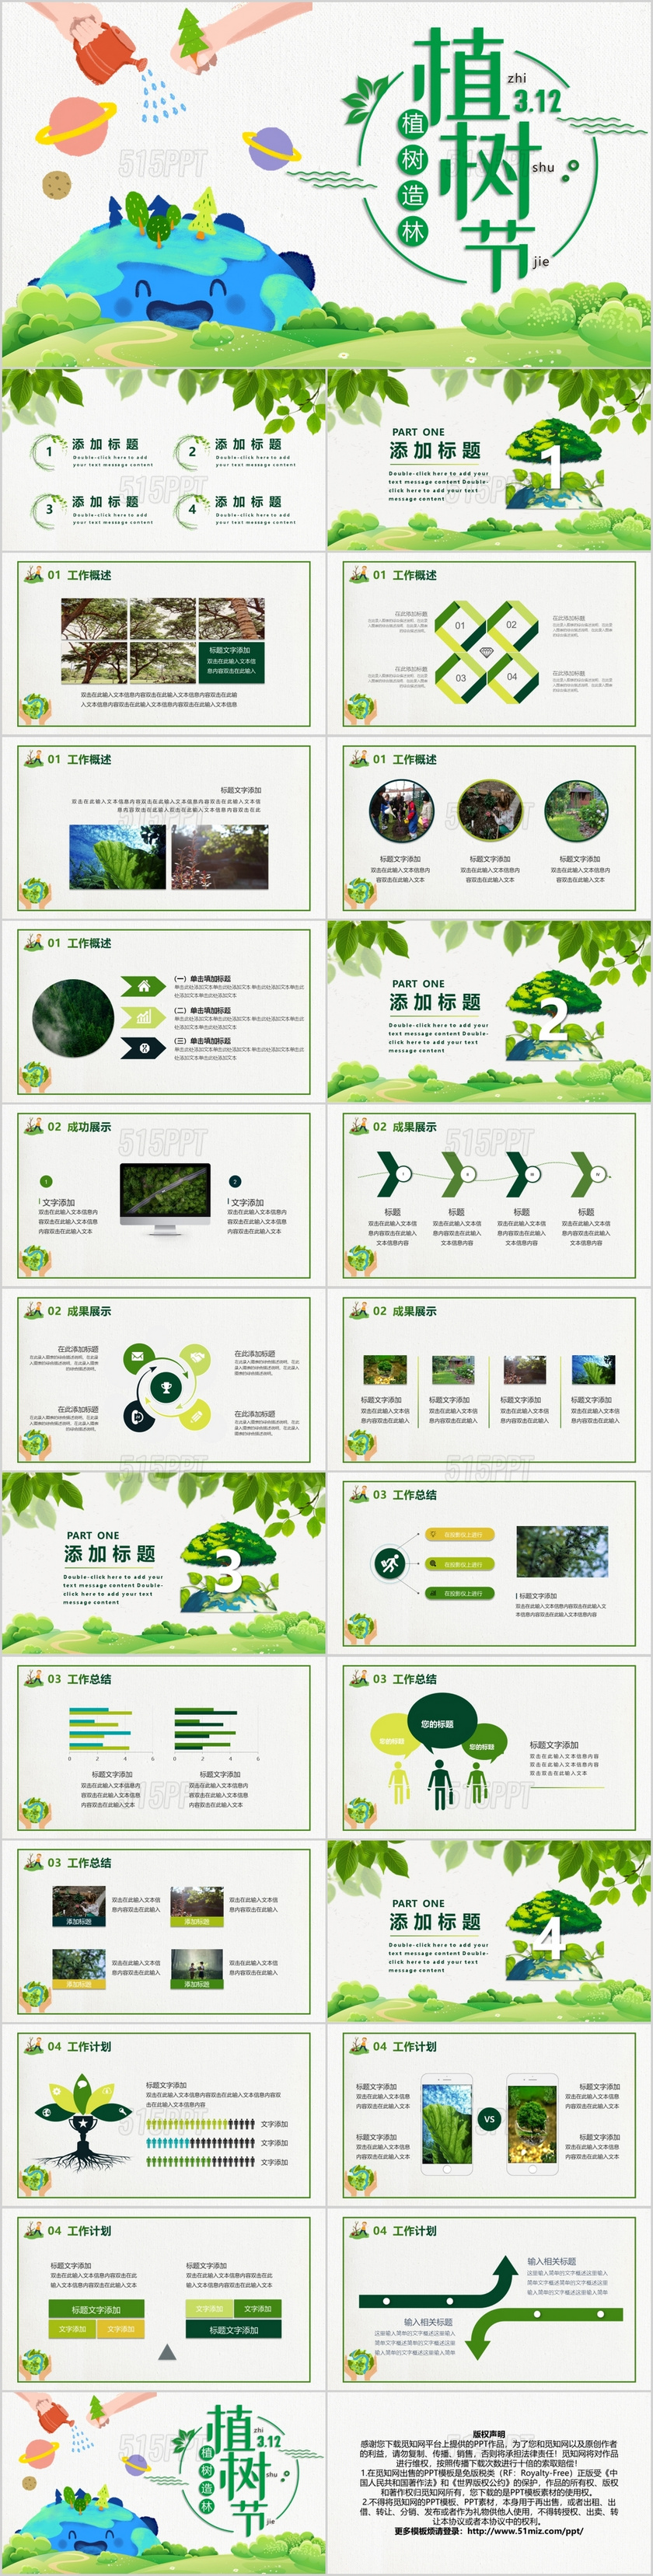 绿色创意爱护环境植树节主题PPT模板宣传PPT动态PPT